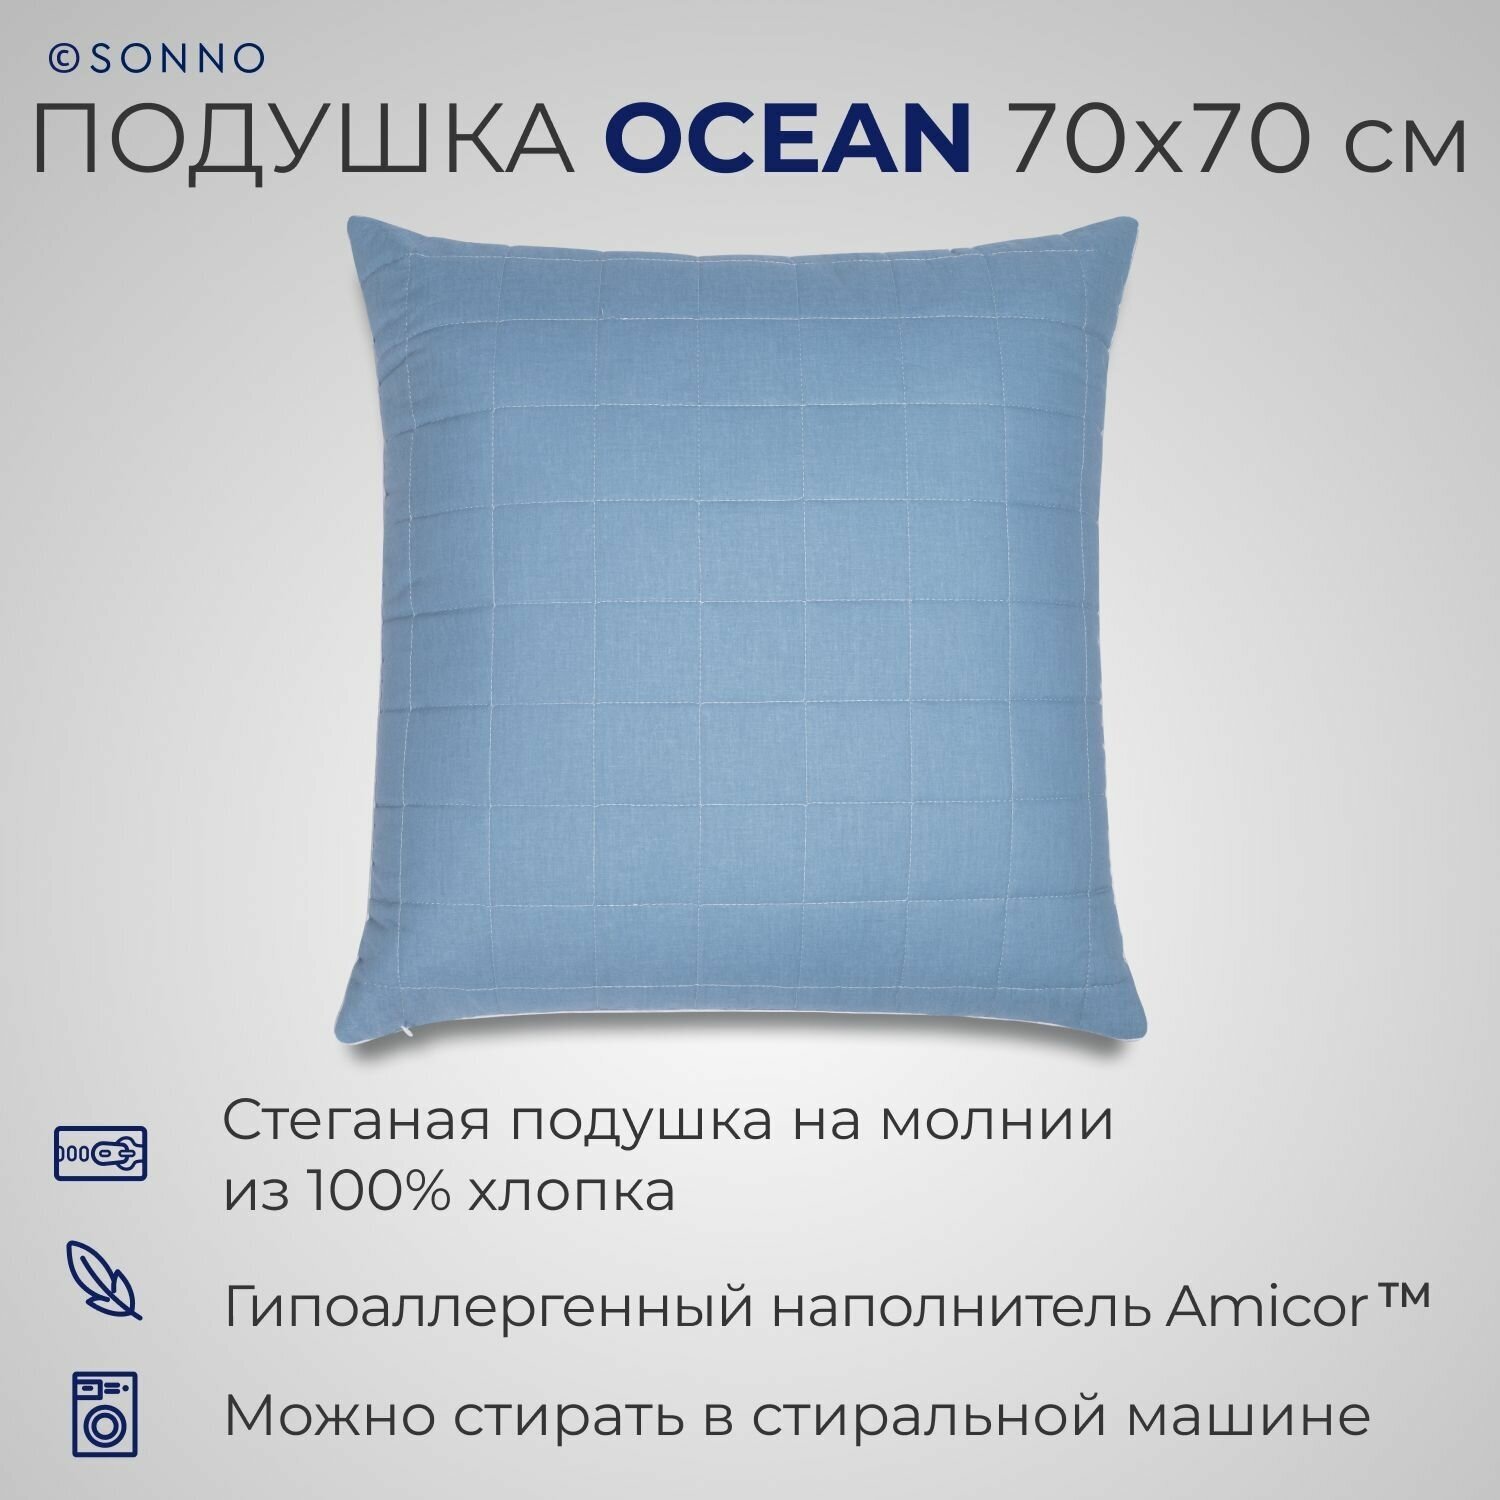 Подушка SONNO OCEAN 70x70 см, гипоаллергенный наполнитель Amicor TM, цвет Океанический голубой - фотография № 1